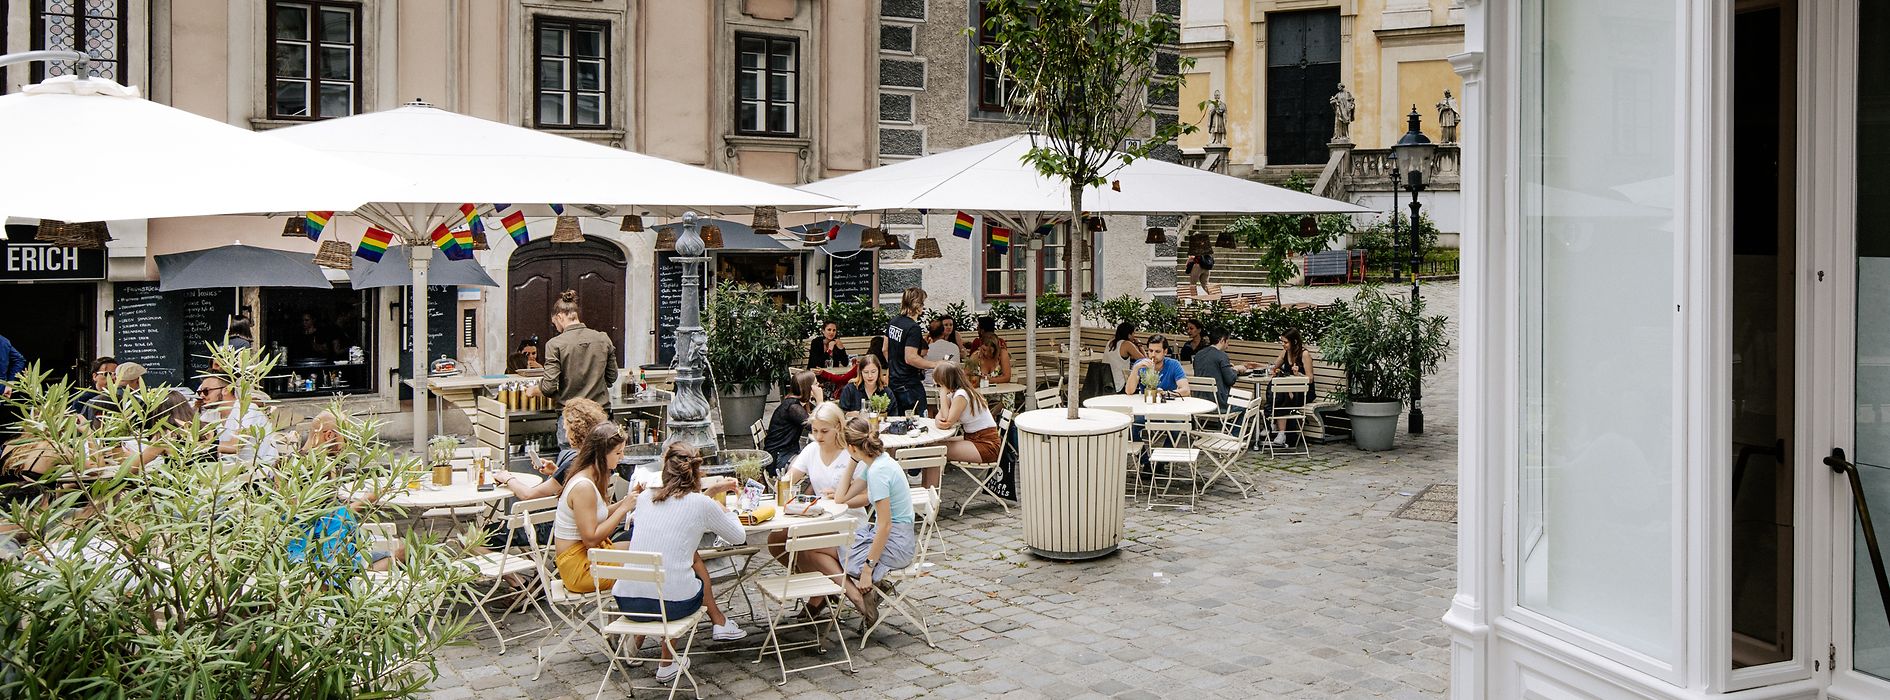 Outdoor dining area on St.-Ulrichs-Platz 